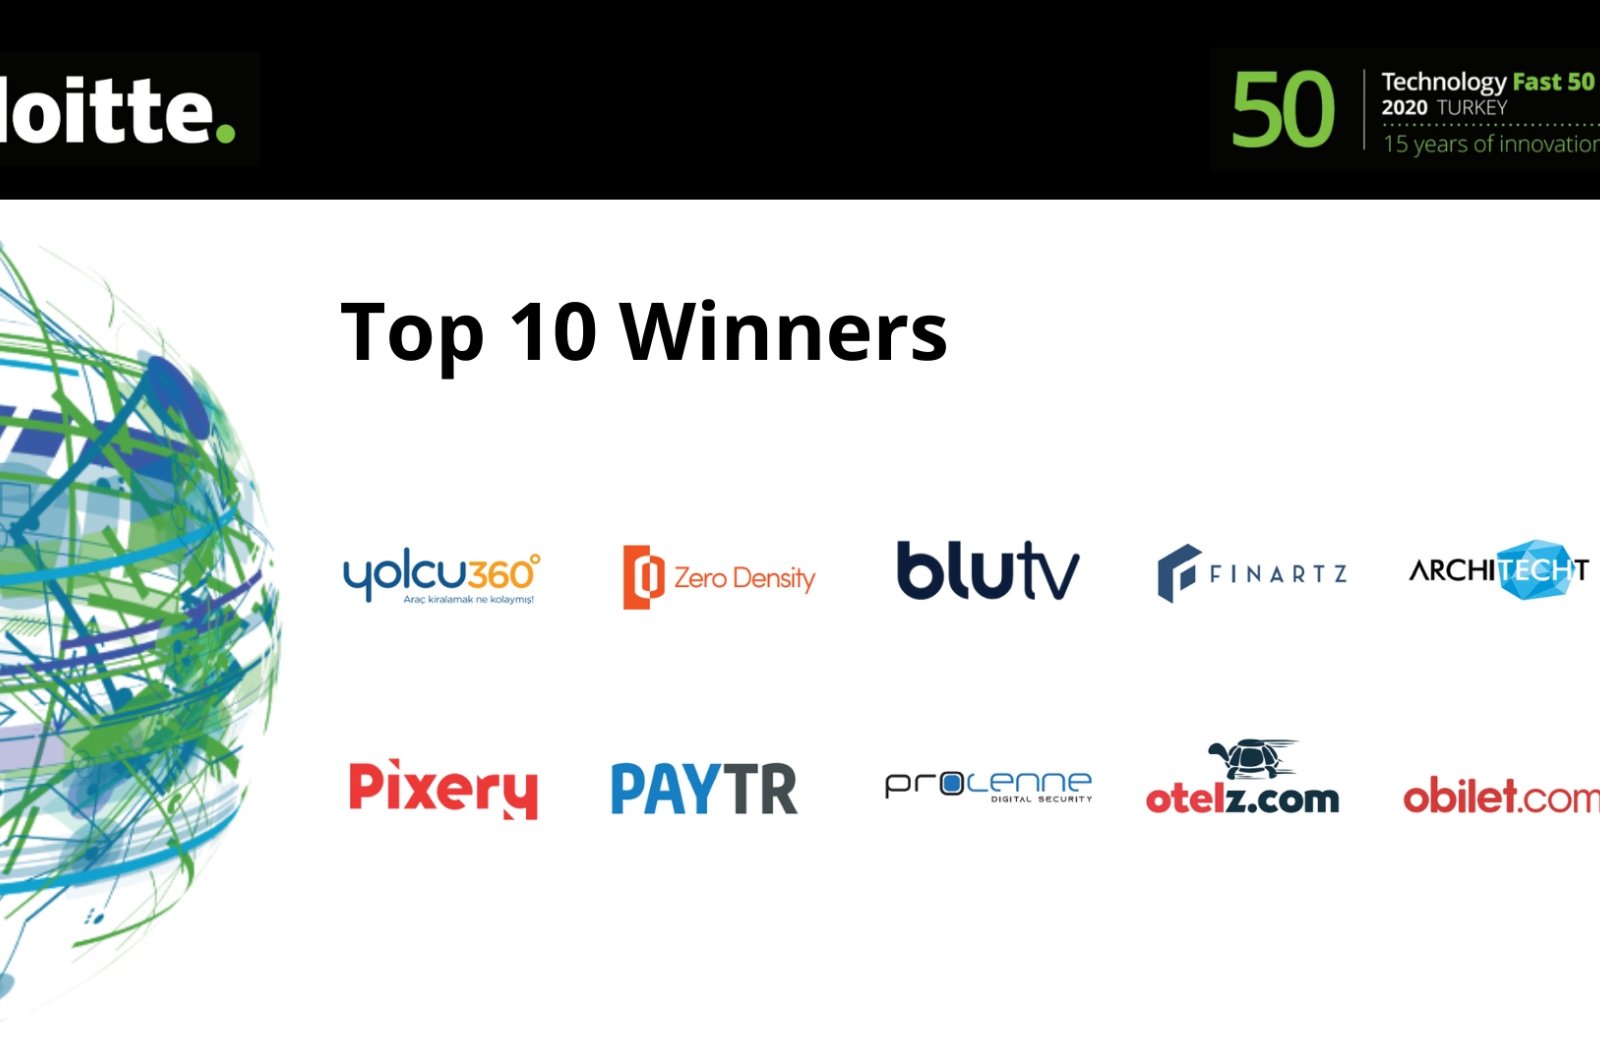 Top 10 winners of the Deloitte Technology Fast 50 2020 Turkey program. (Courtesy of Deloitte)